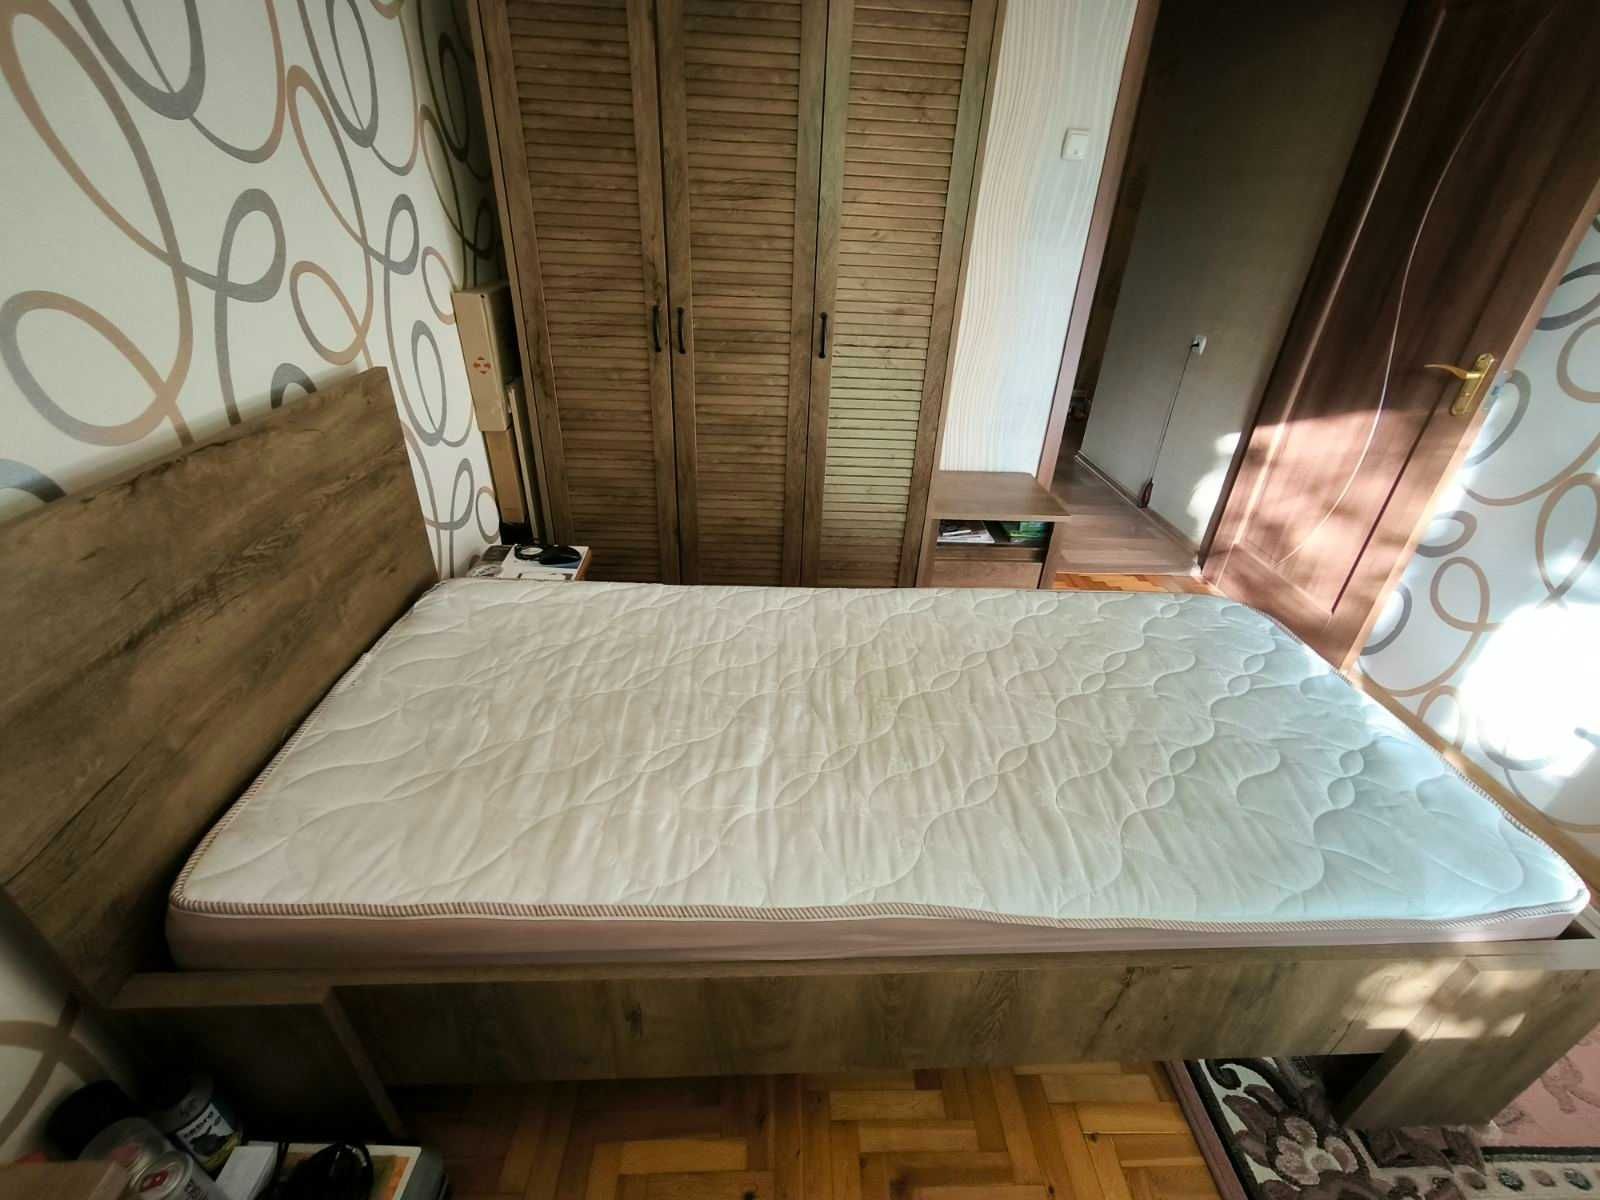 JYSK Шкаф Полный комплект мебели в спальню юск кровать комод тумбочка